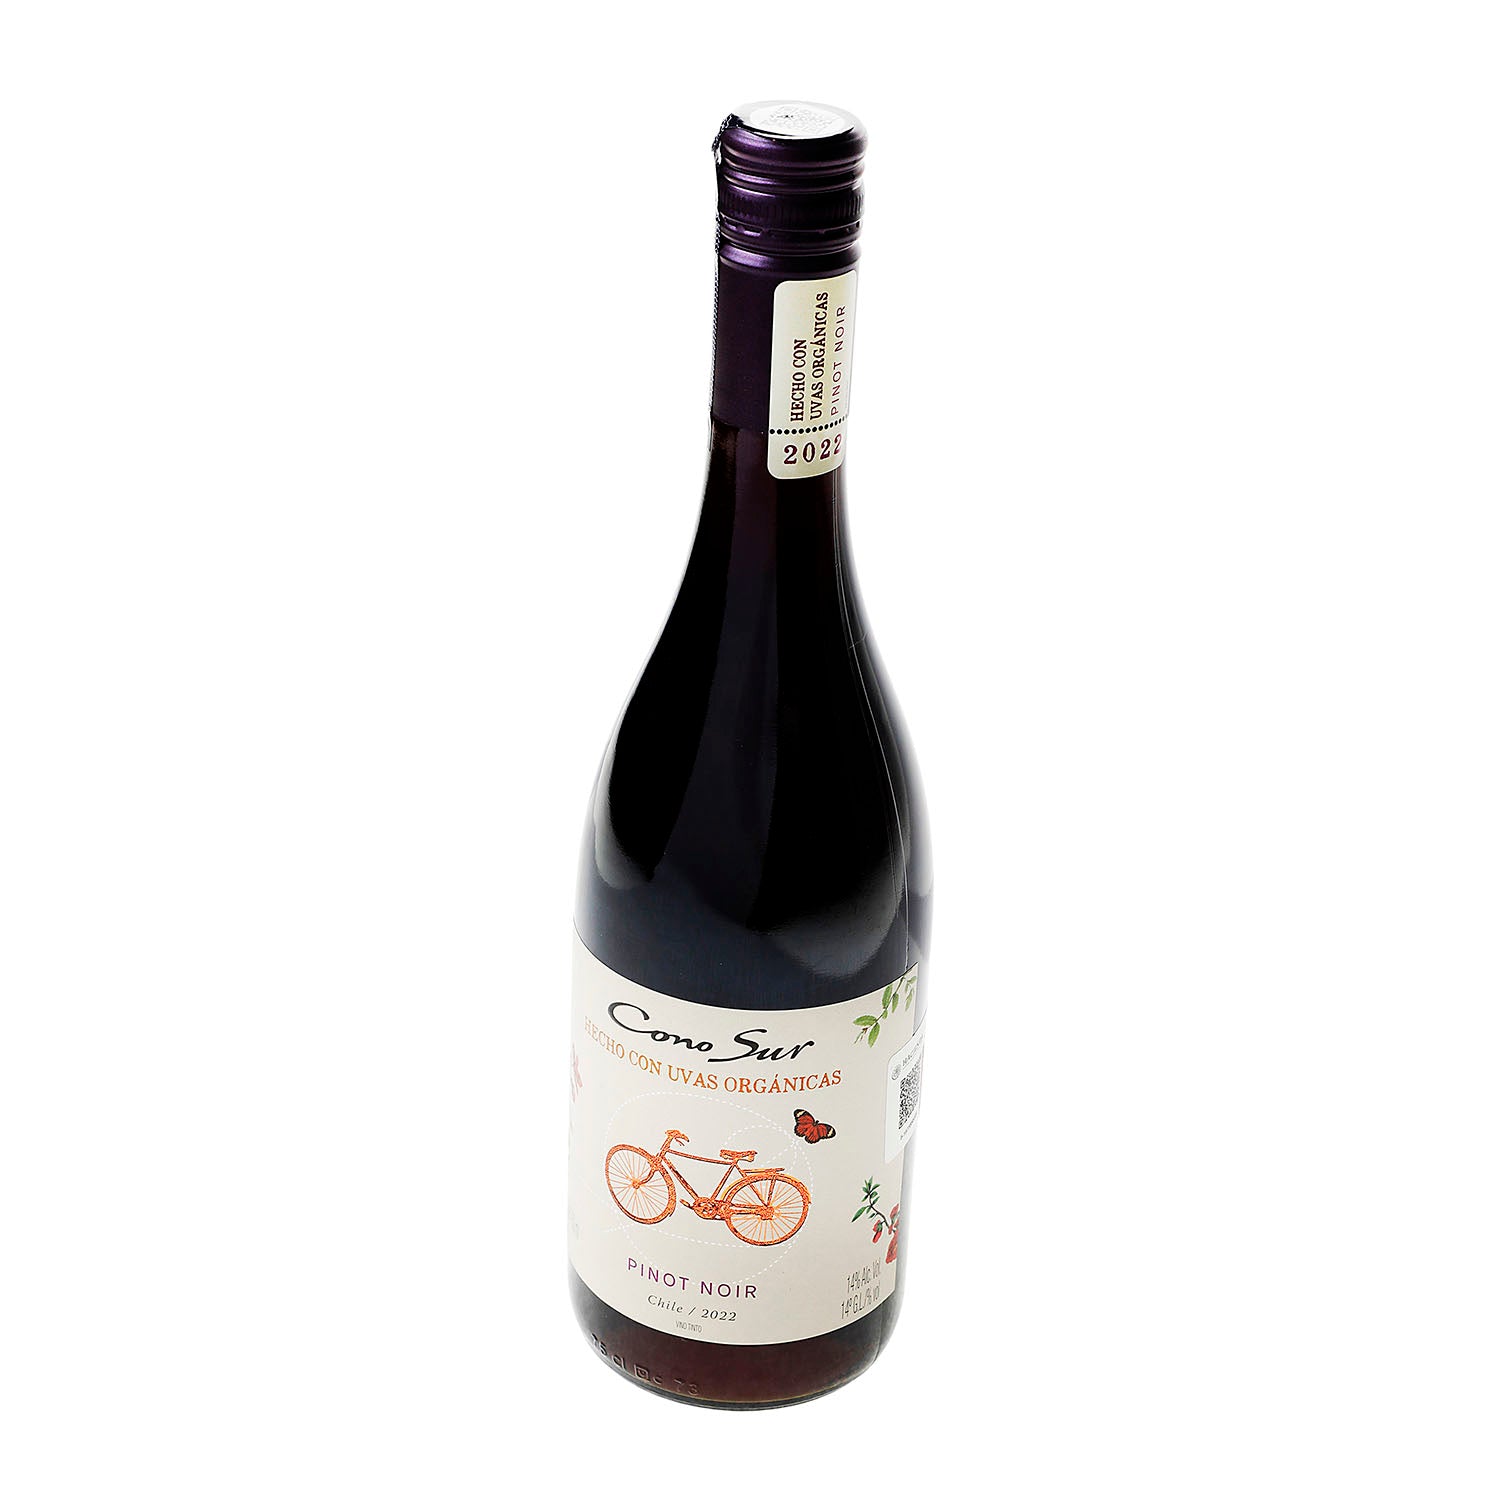 Vino Tinto Cono Sur Orgánico Pinot Noir de 750 ml- Chile